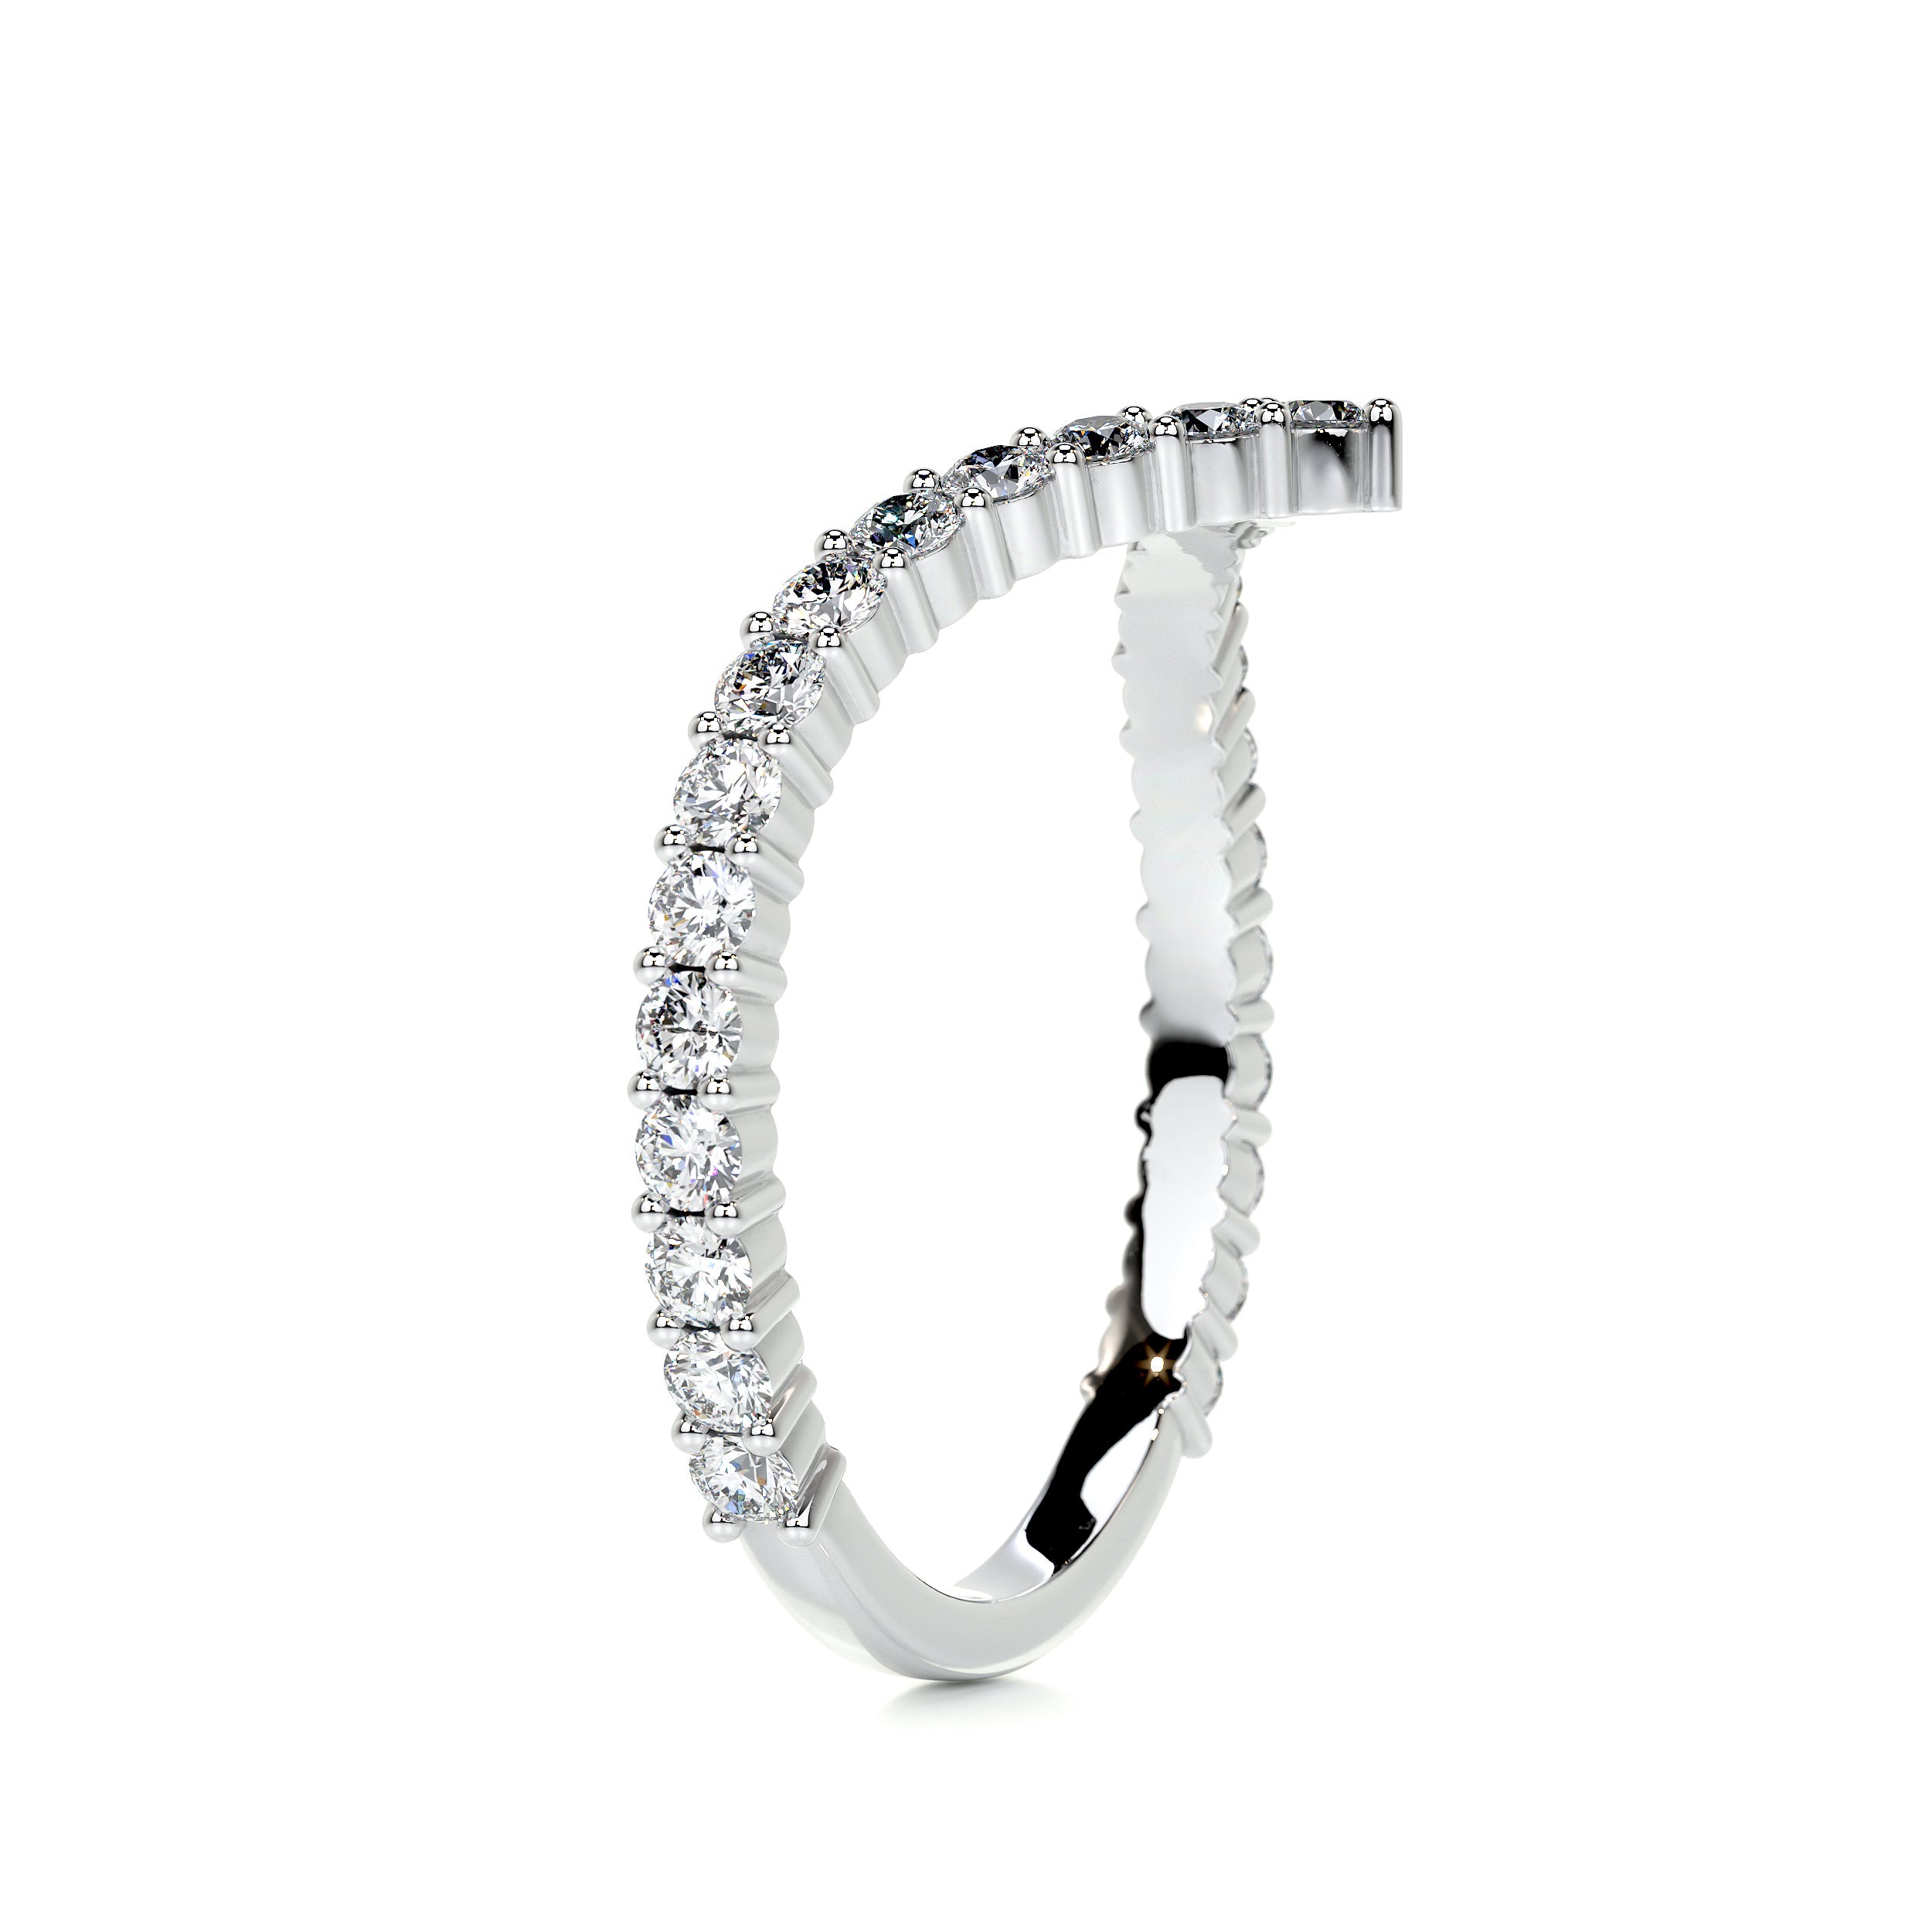 Dawn Diamond Wedding Ring   (0.50 Carat) -14K White Gold